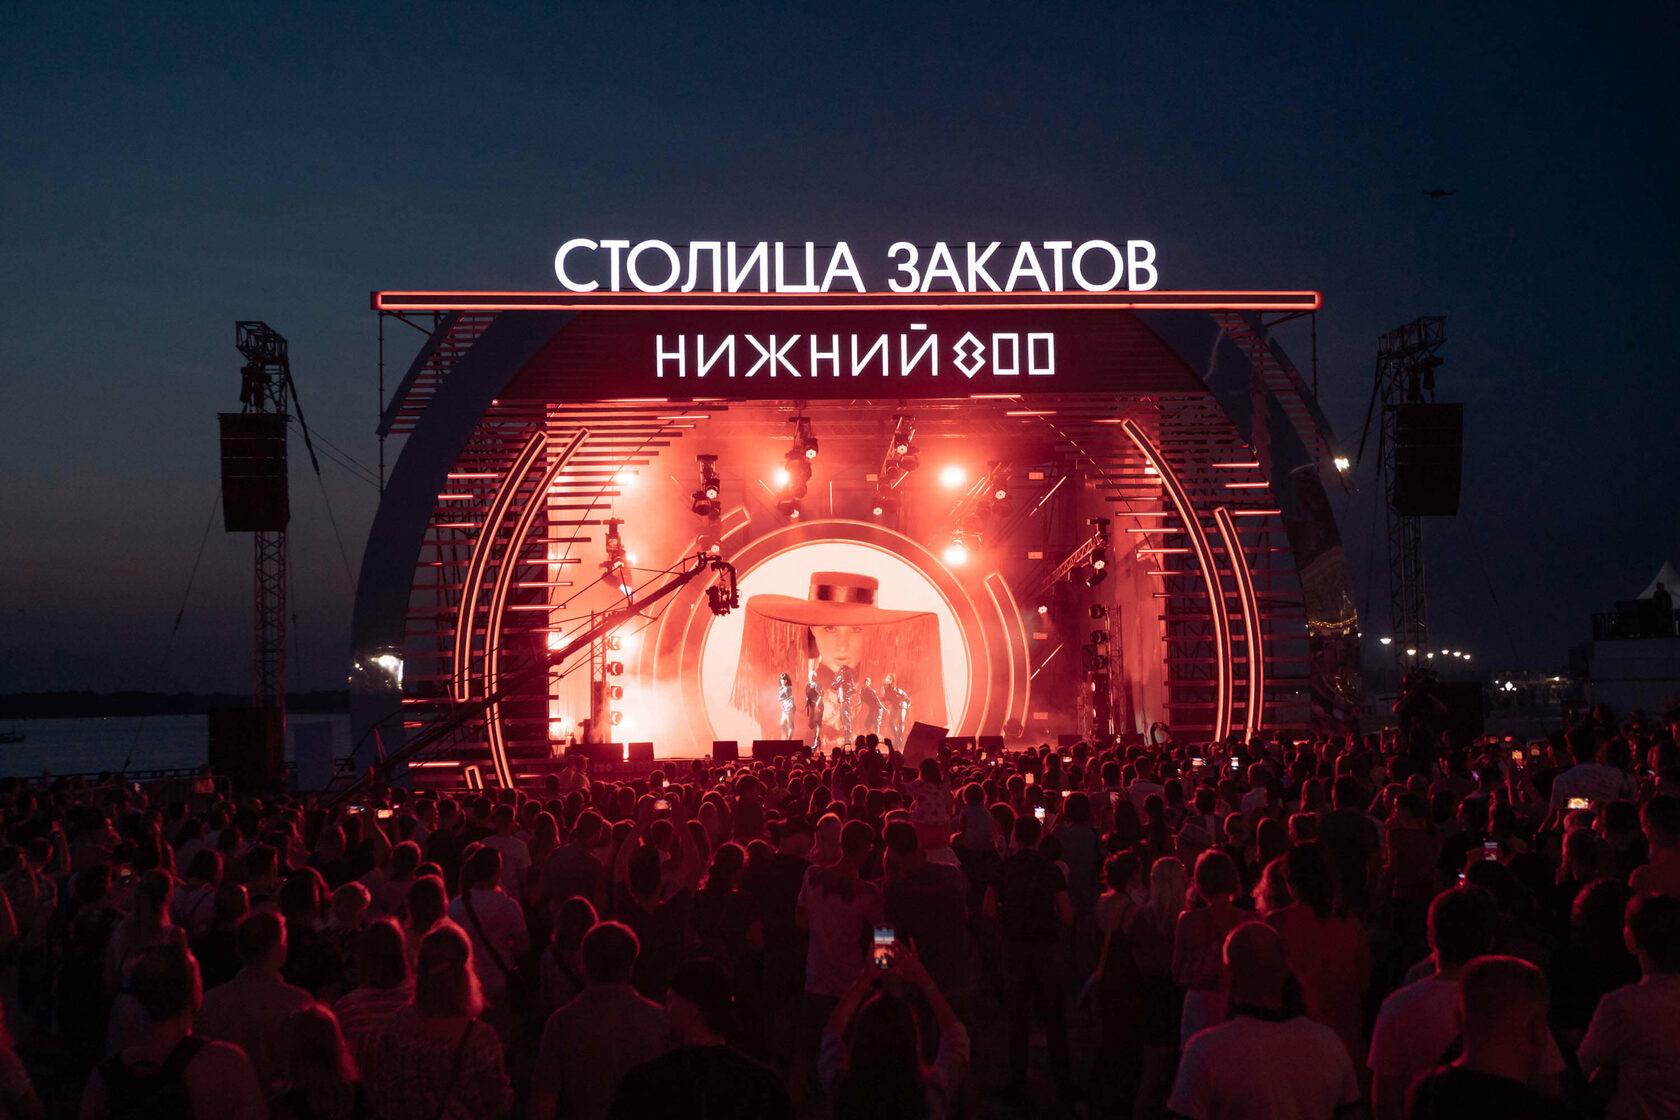 Фестиваль музыки и фейерверков «Столица закатов» проходил с 12 июня по 25 сентября 2021 года. Фото: Нижний 800